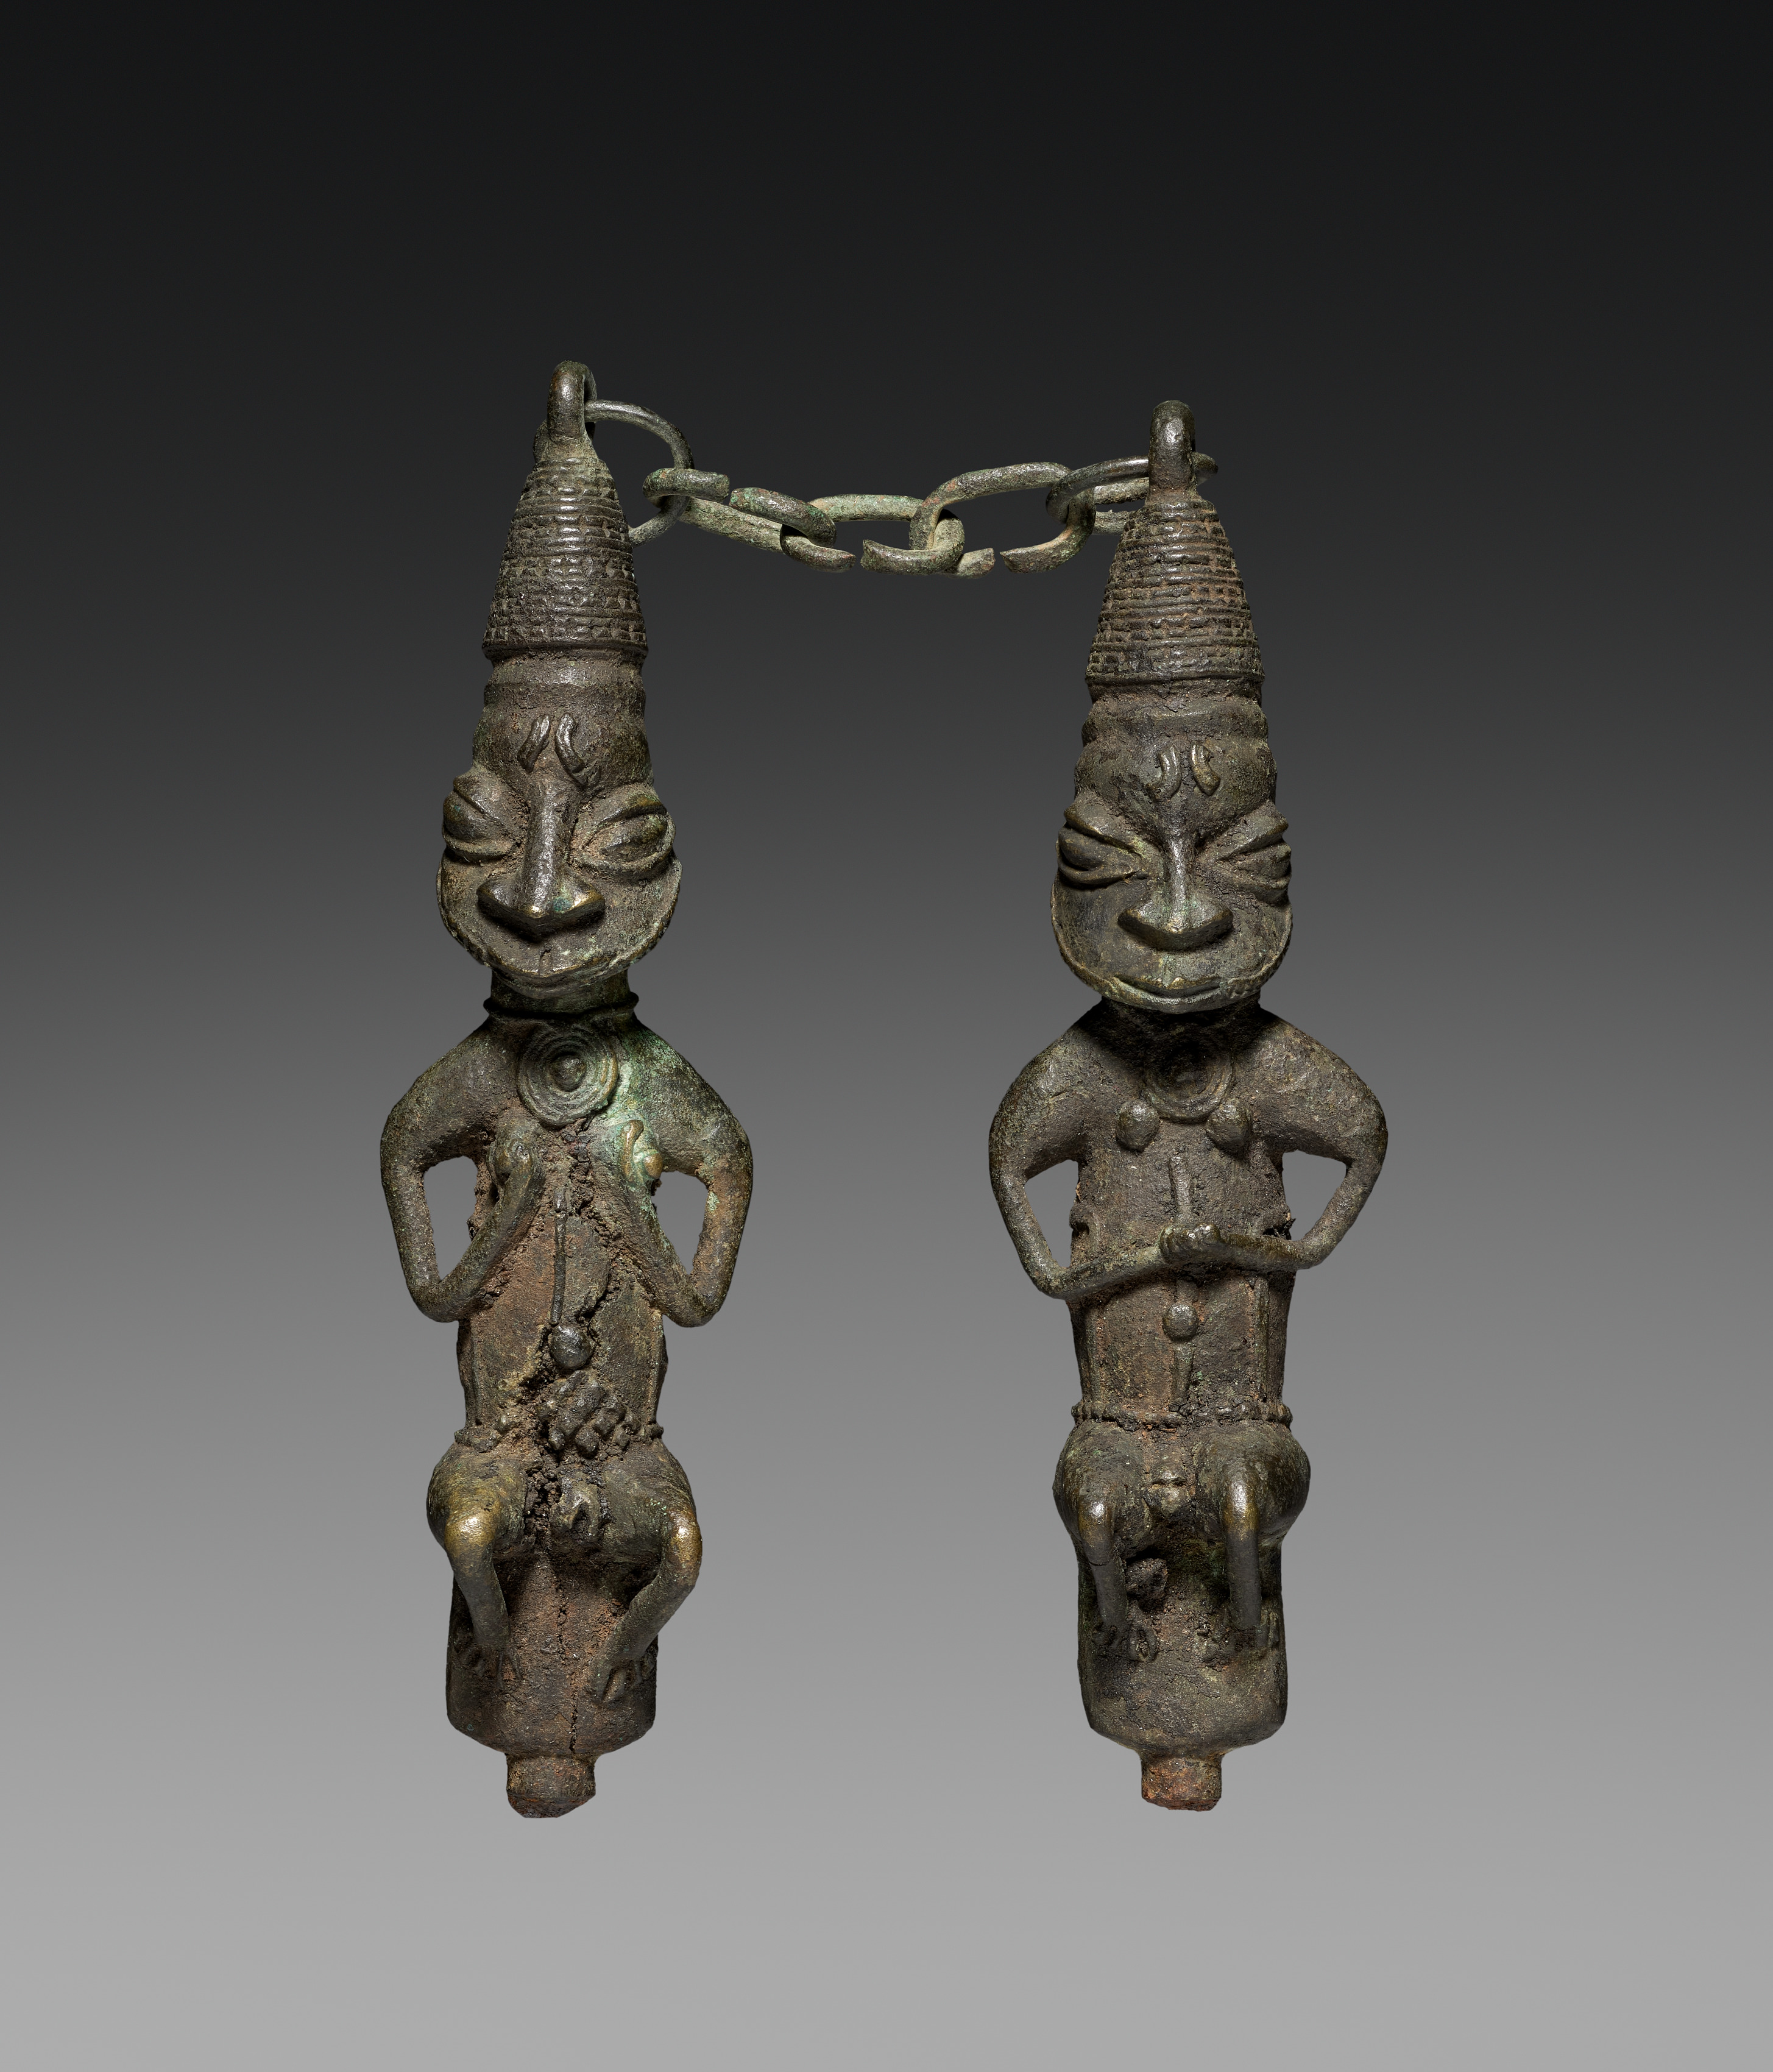 Pair of Ritual Staffs (ẹdan Ògbóni)